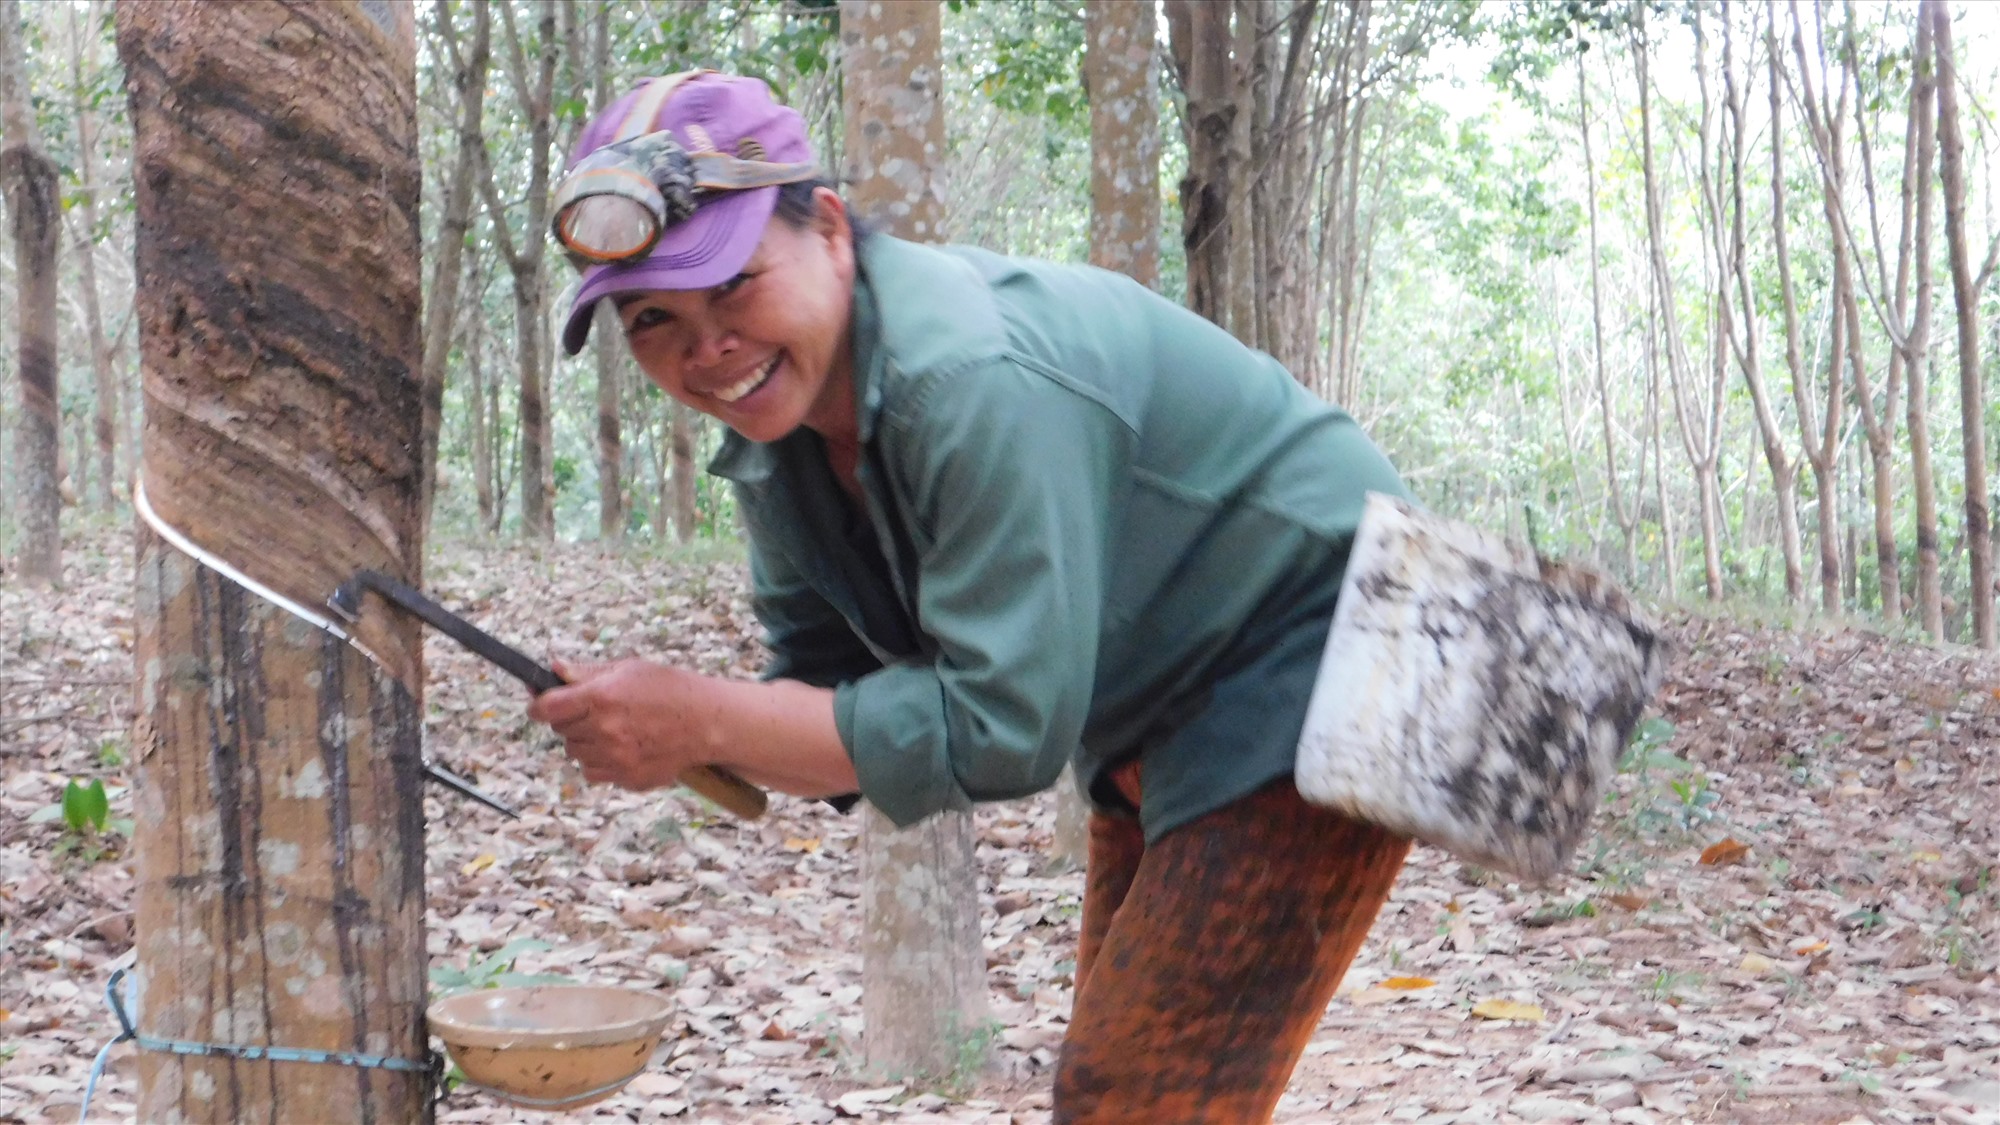 Với vườn cây cao su 400 cây đã cho khai thác, giờ đây chị Hoàng Thị Thắng (thôn Đâu Bình, xã Cam Tuyền, huyện Cam Lộ, tỉnh Quảng Trị) đã có thu nhập ổn định hơn.